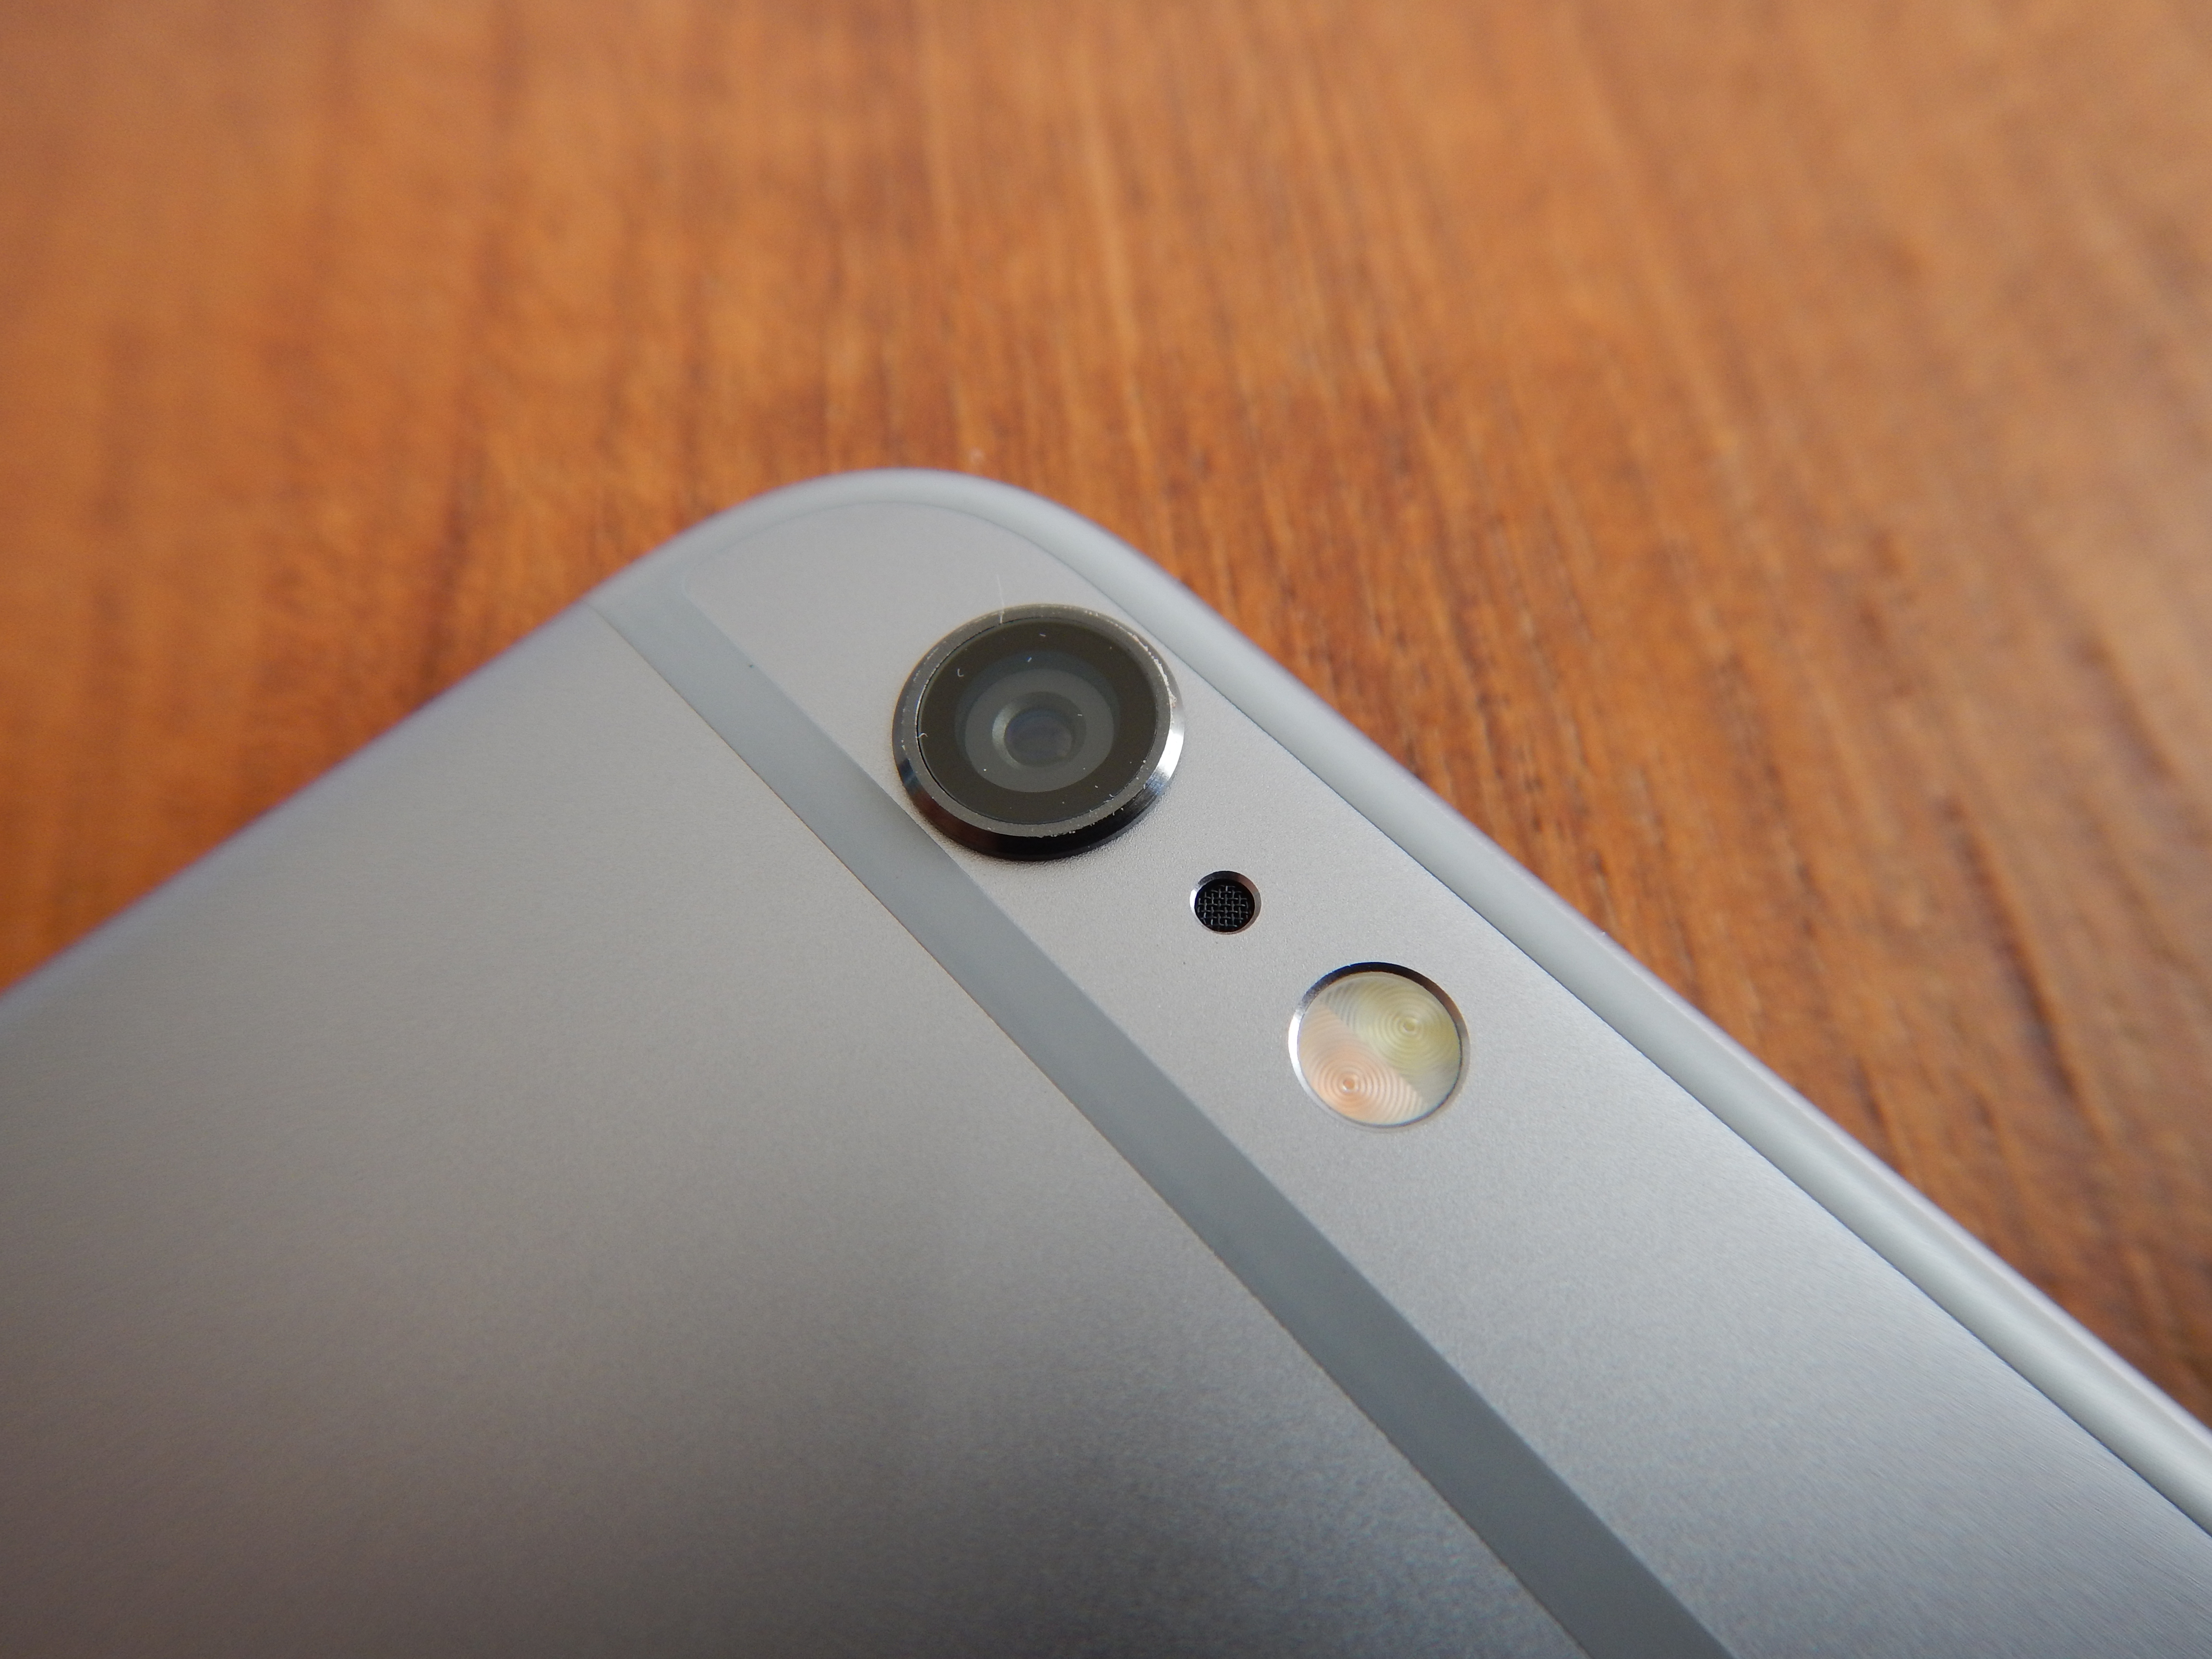 8 фактов о камере iPhone 6, о которых стоит знать фотографам